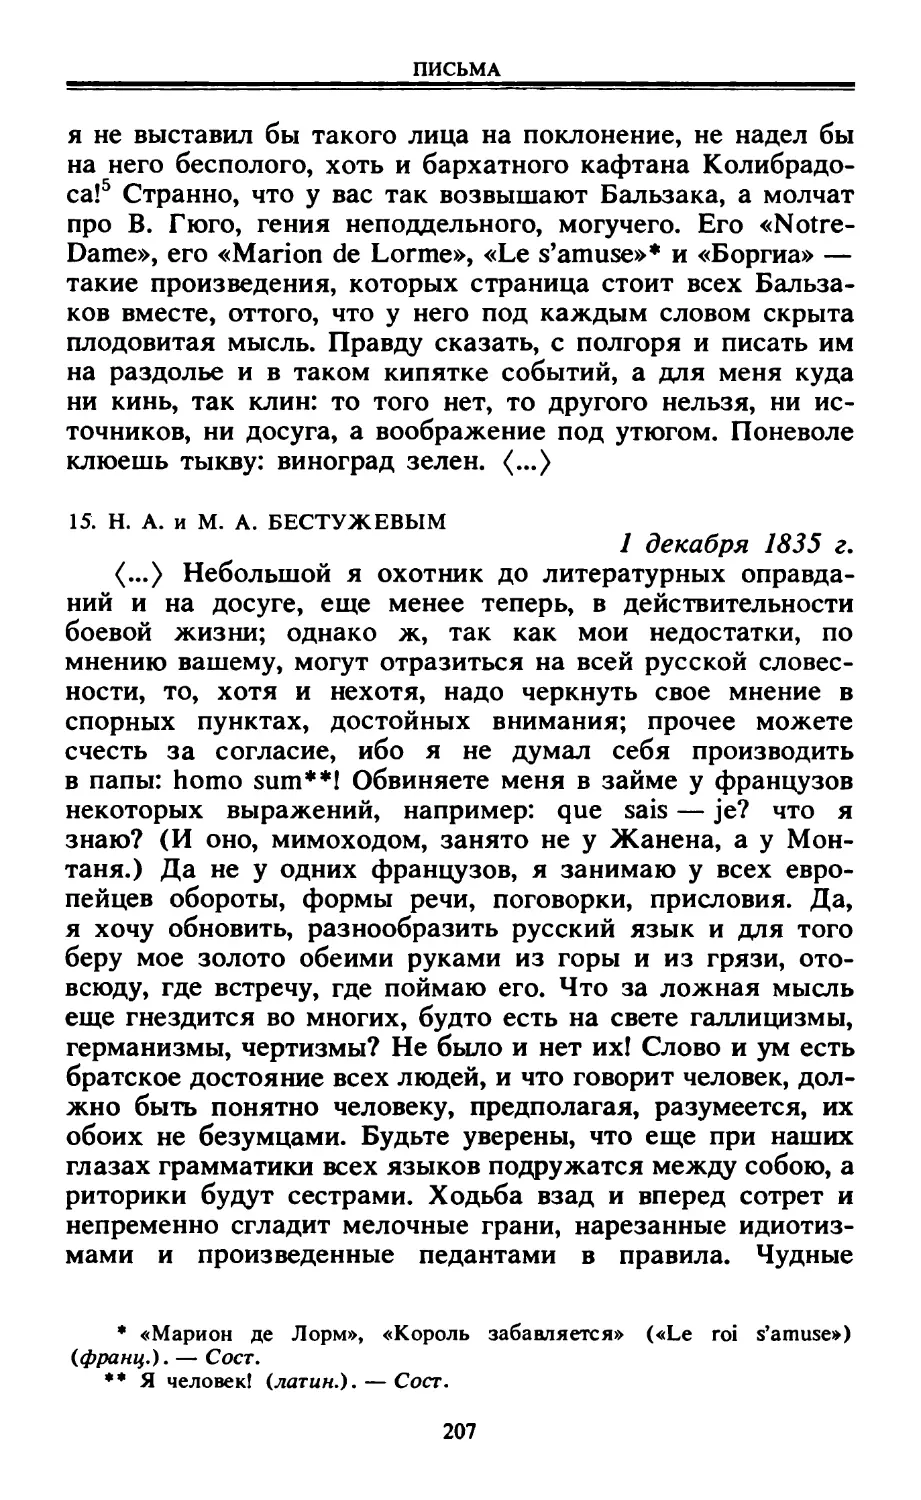 15. Н. А. и М. А. Бестужевым. 1 декабря 1835 г.